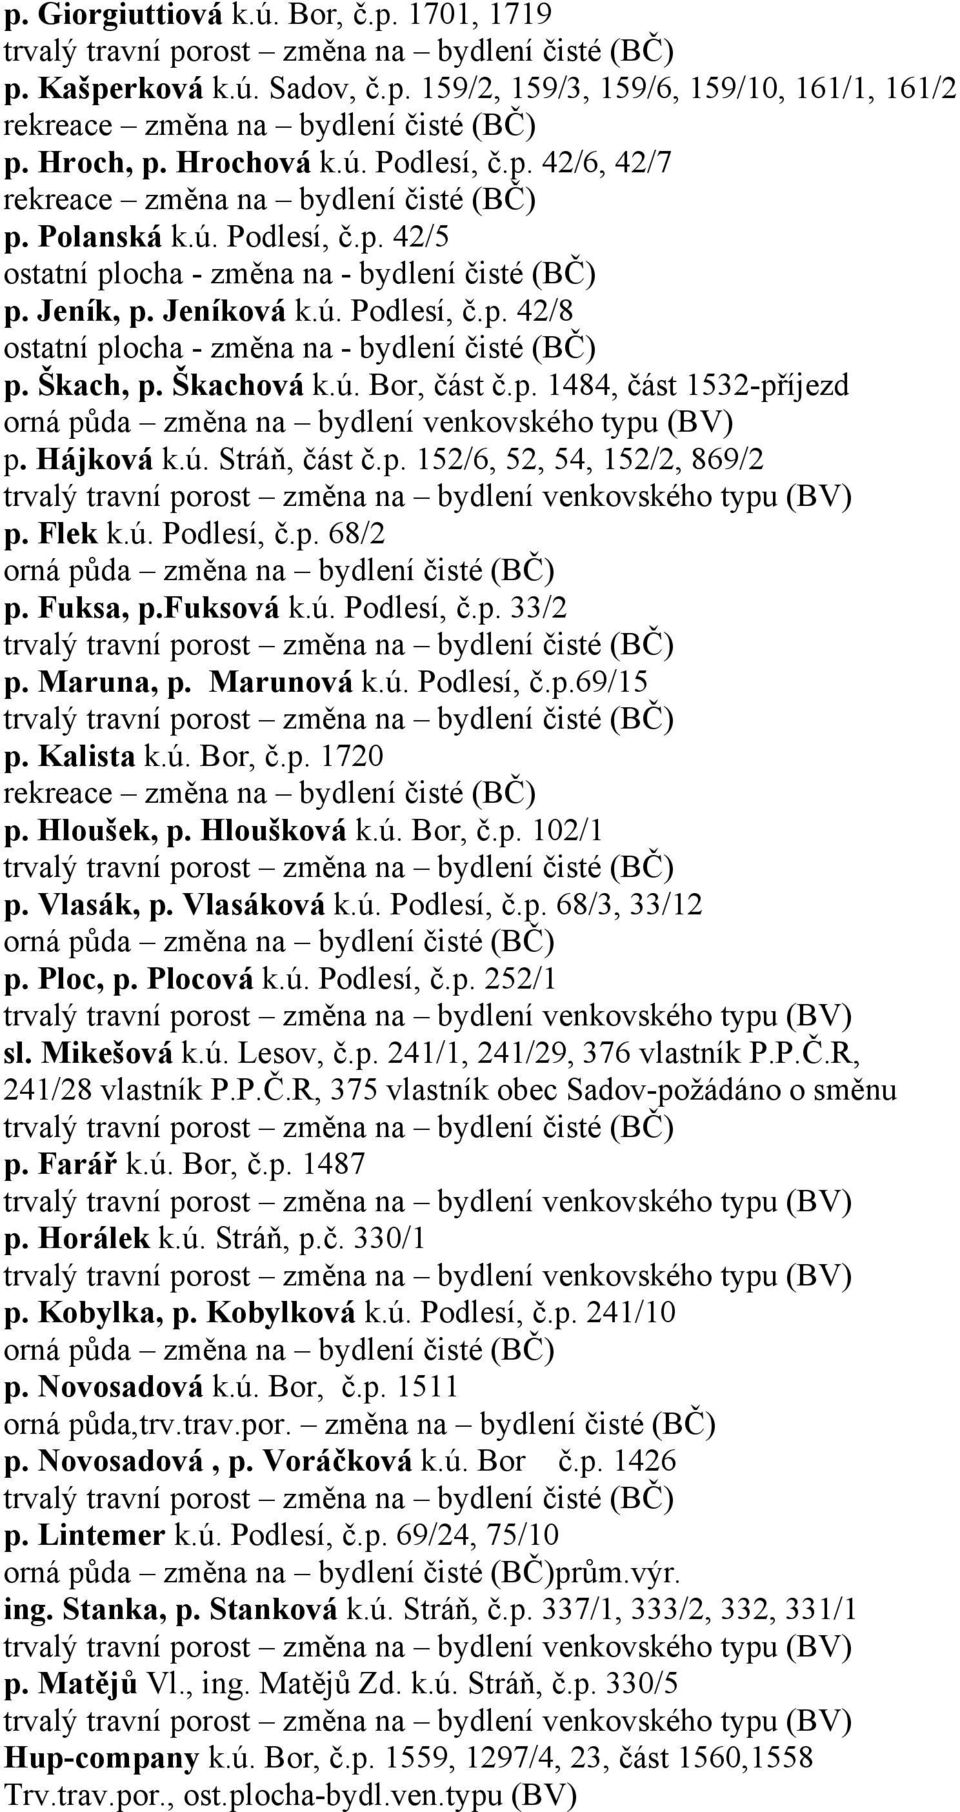 Hájková k.ú. Stráň, část č.p. 152/6, 52, 54, 152/2, 869/2 p. Flek k.ú. Podlesí, č.p. 68/2 p. Fuksa, p.fuksová k.ú. Podlesí, č.p. 33/2 p. Maruna, p. Marunová k.ú. Podlesí, č.p.69/15 p. Kalista k.ú. Bor, č.